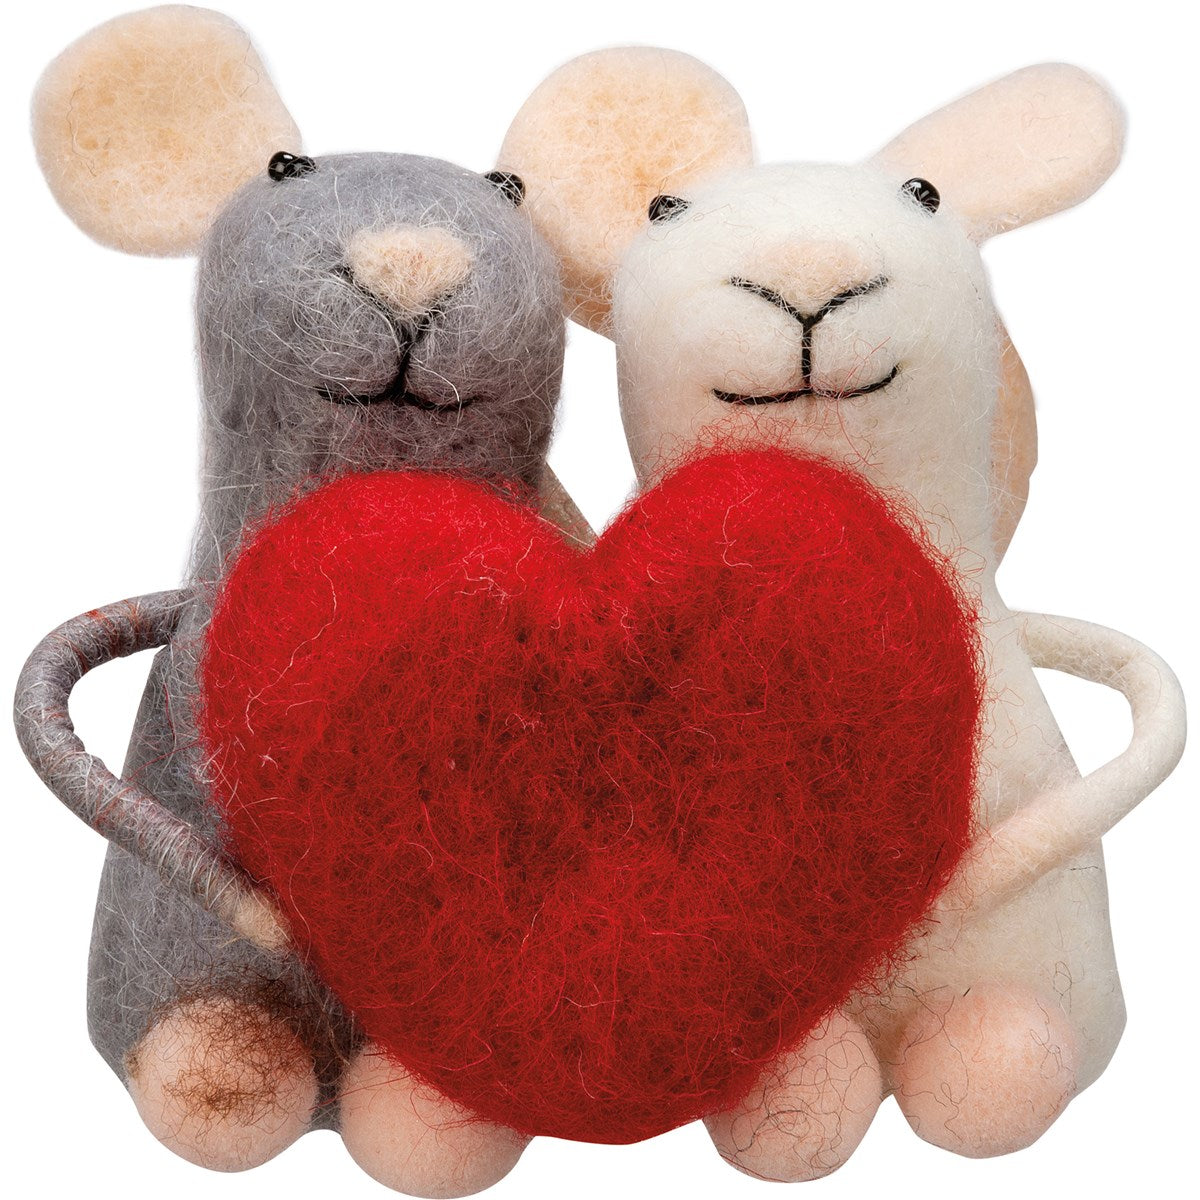 Primitive Felt Mouse Valentines Mouse Couple w/ Heart Ornament